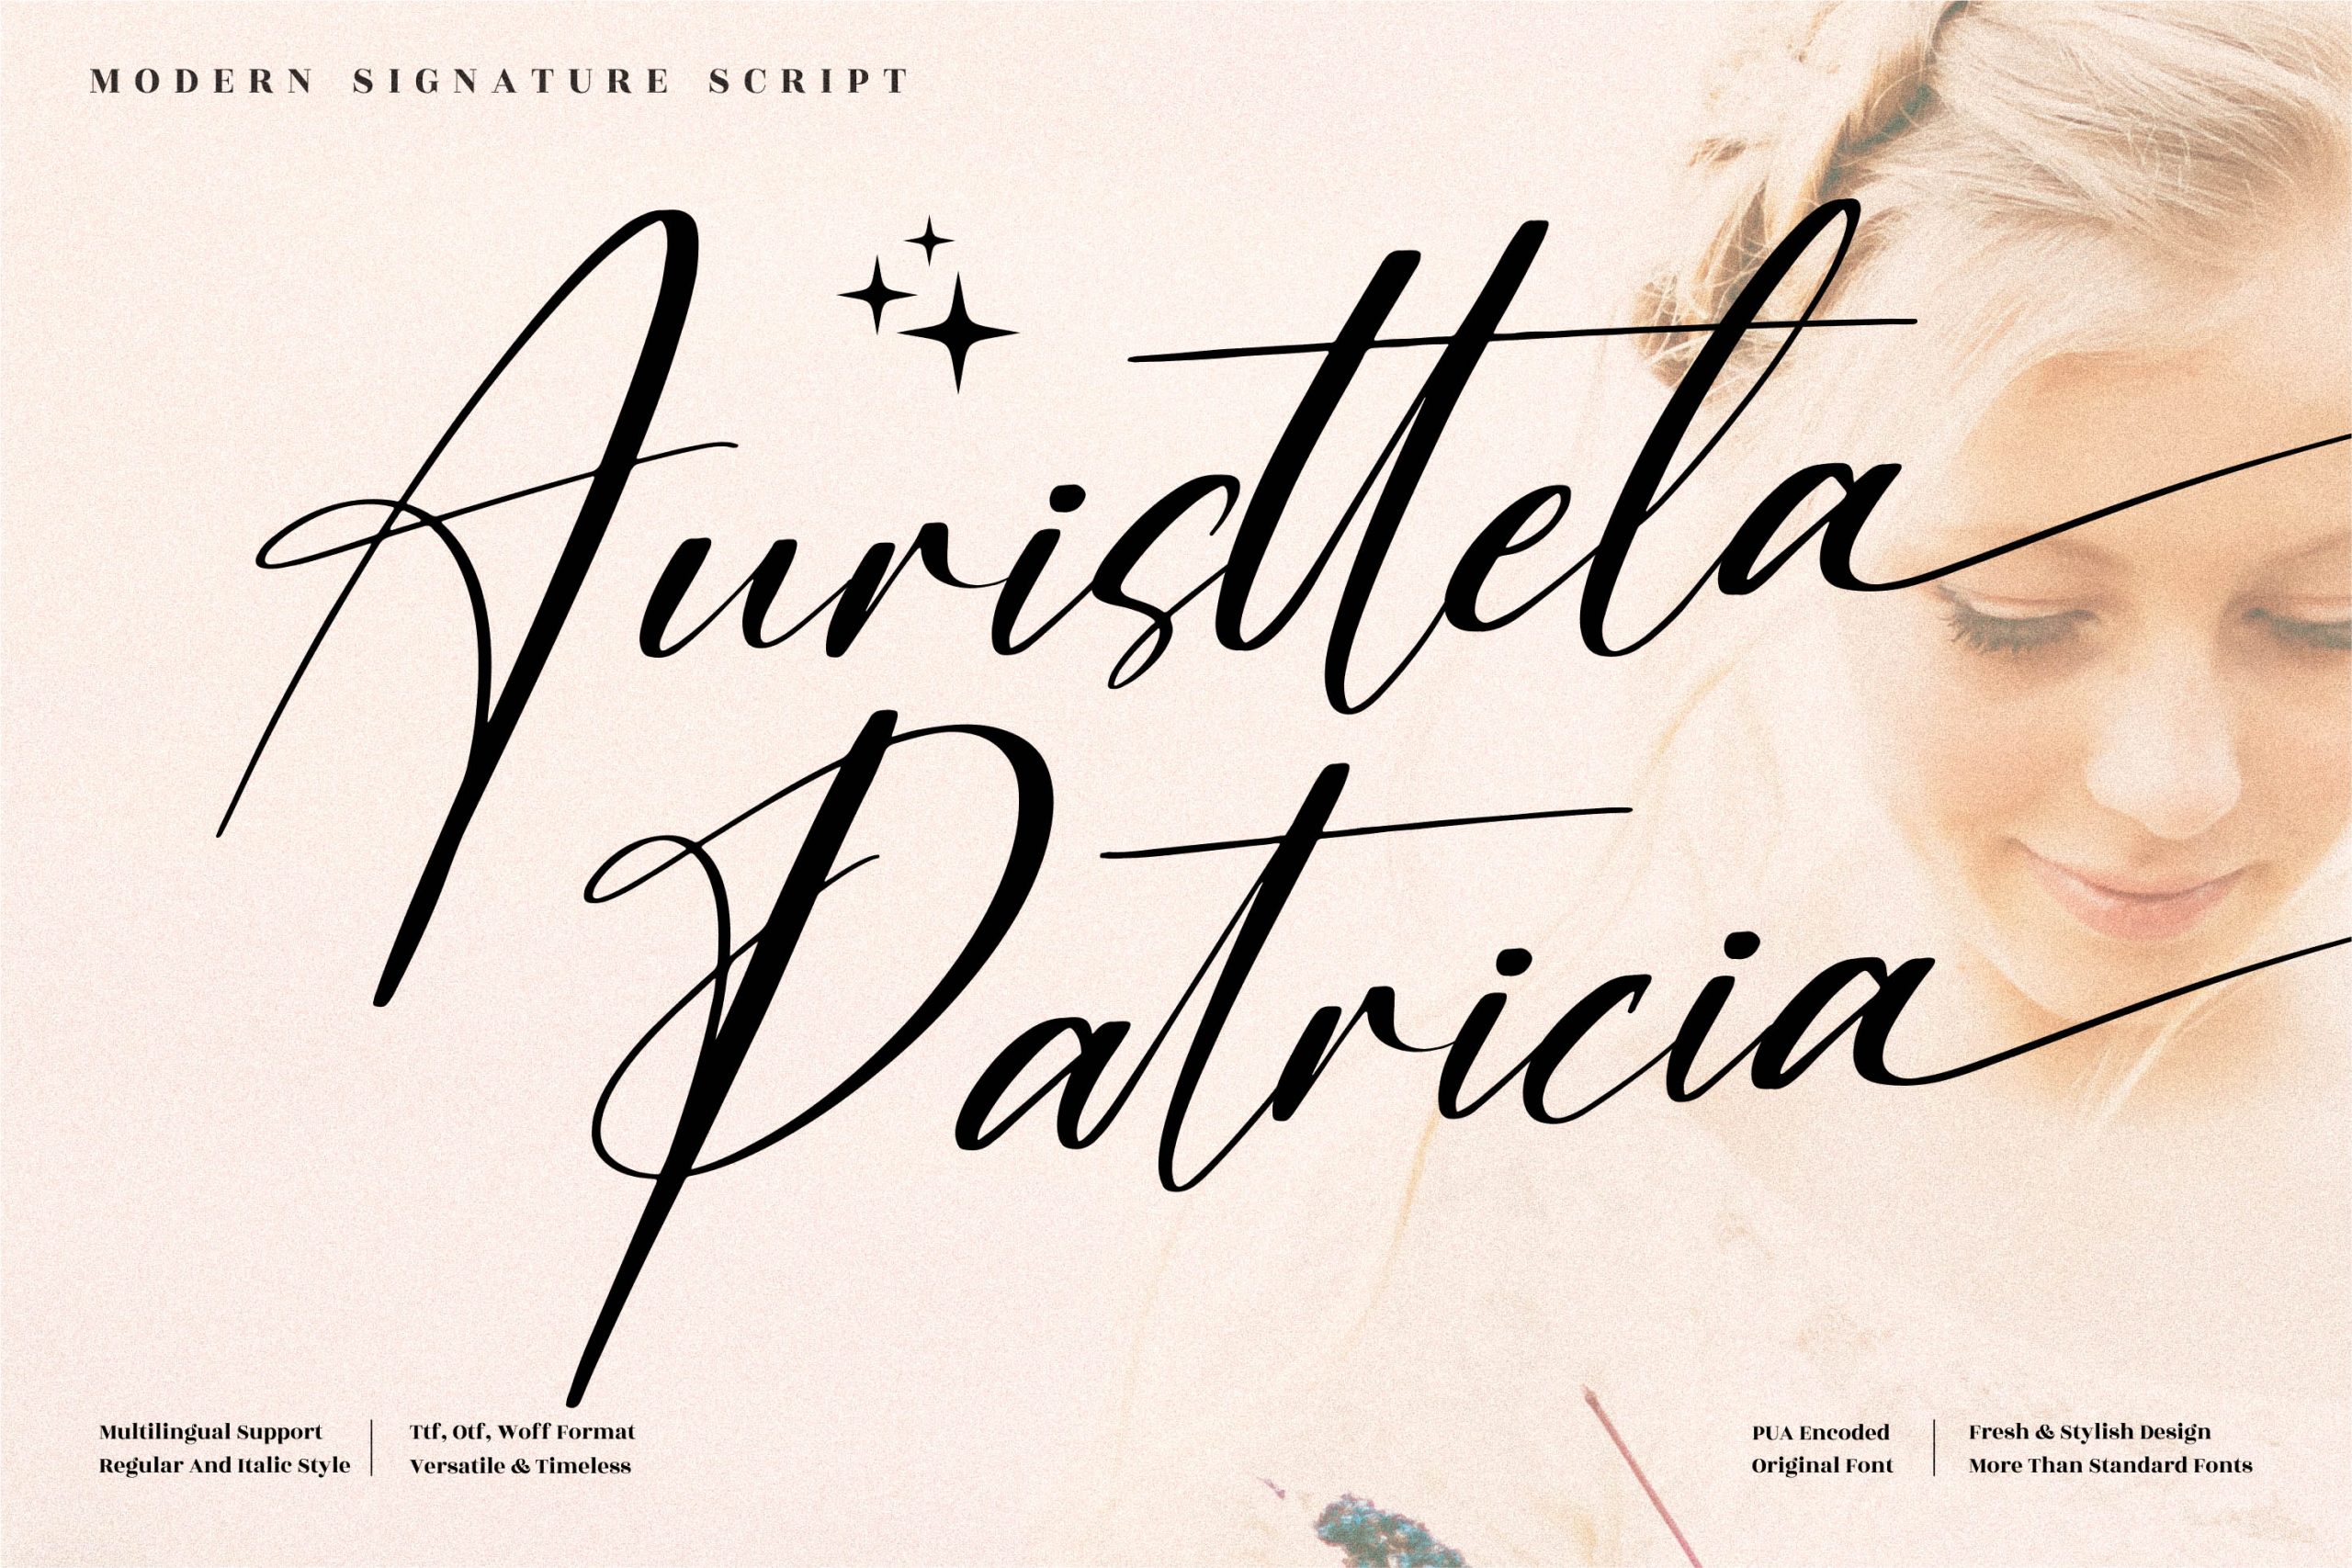 Auristtela Patricia Script Font